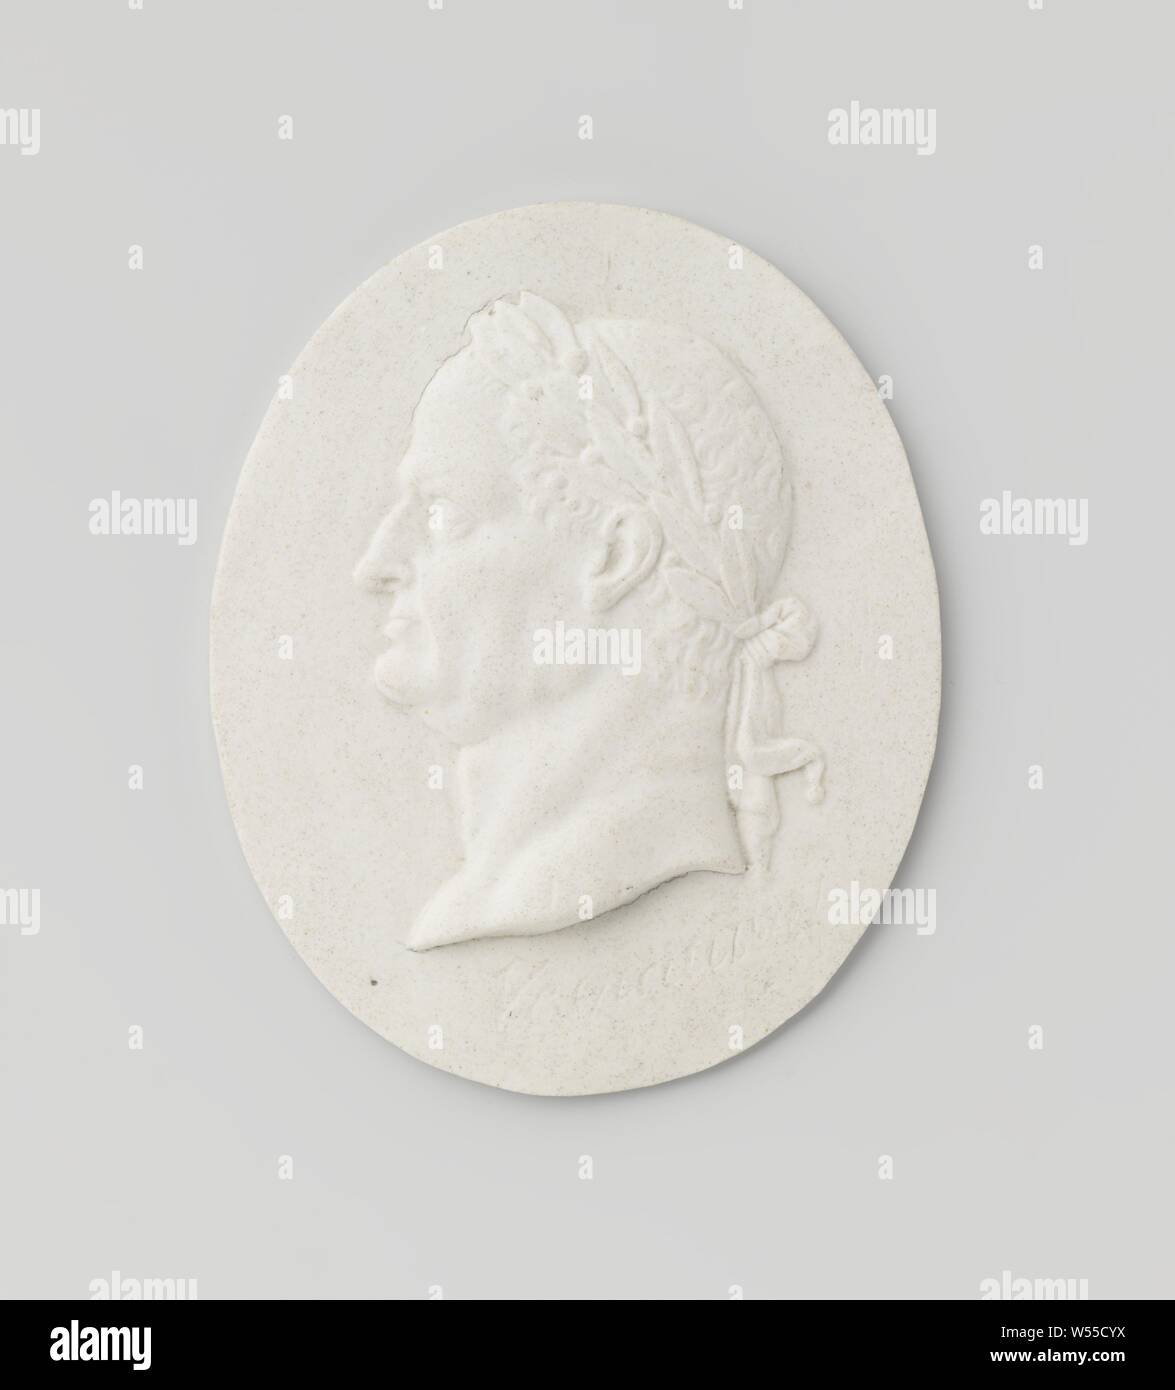 Emperor Vespasian, Portrait medallion of biscuit, depicting the Roman emperor Vespasian according to the engraved inscription., Manufactuur Oud-Loosdrecht, Loosdrecht, c. 1782 - c. 1784, porcelain (material), h 7.9 cm × w 6.3 cm × t 1 cm Stock Photo